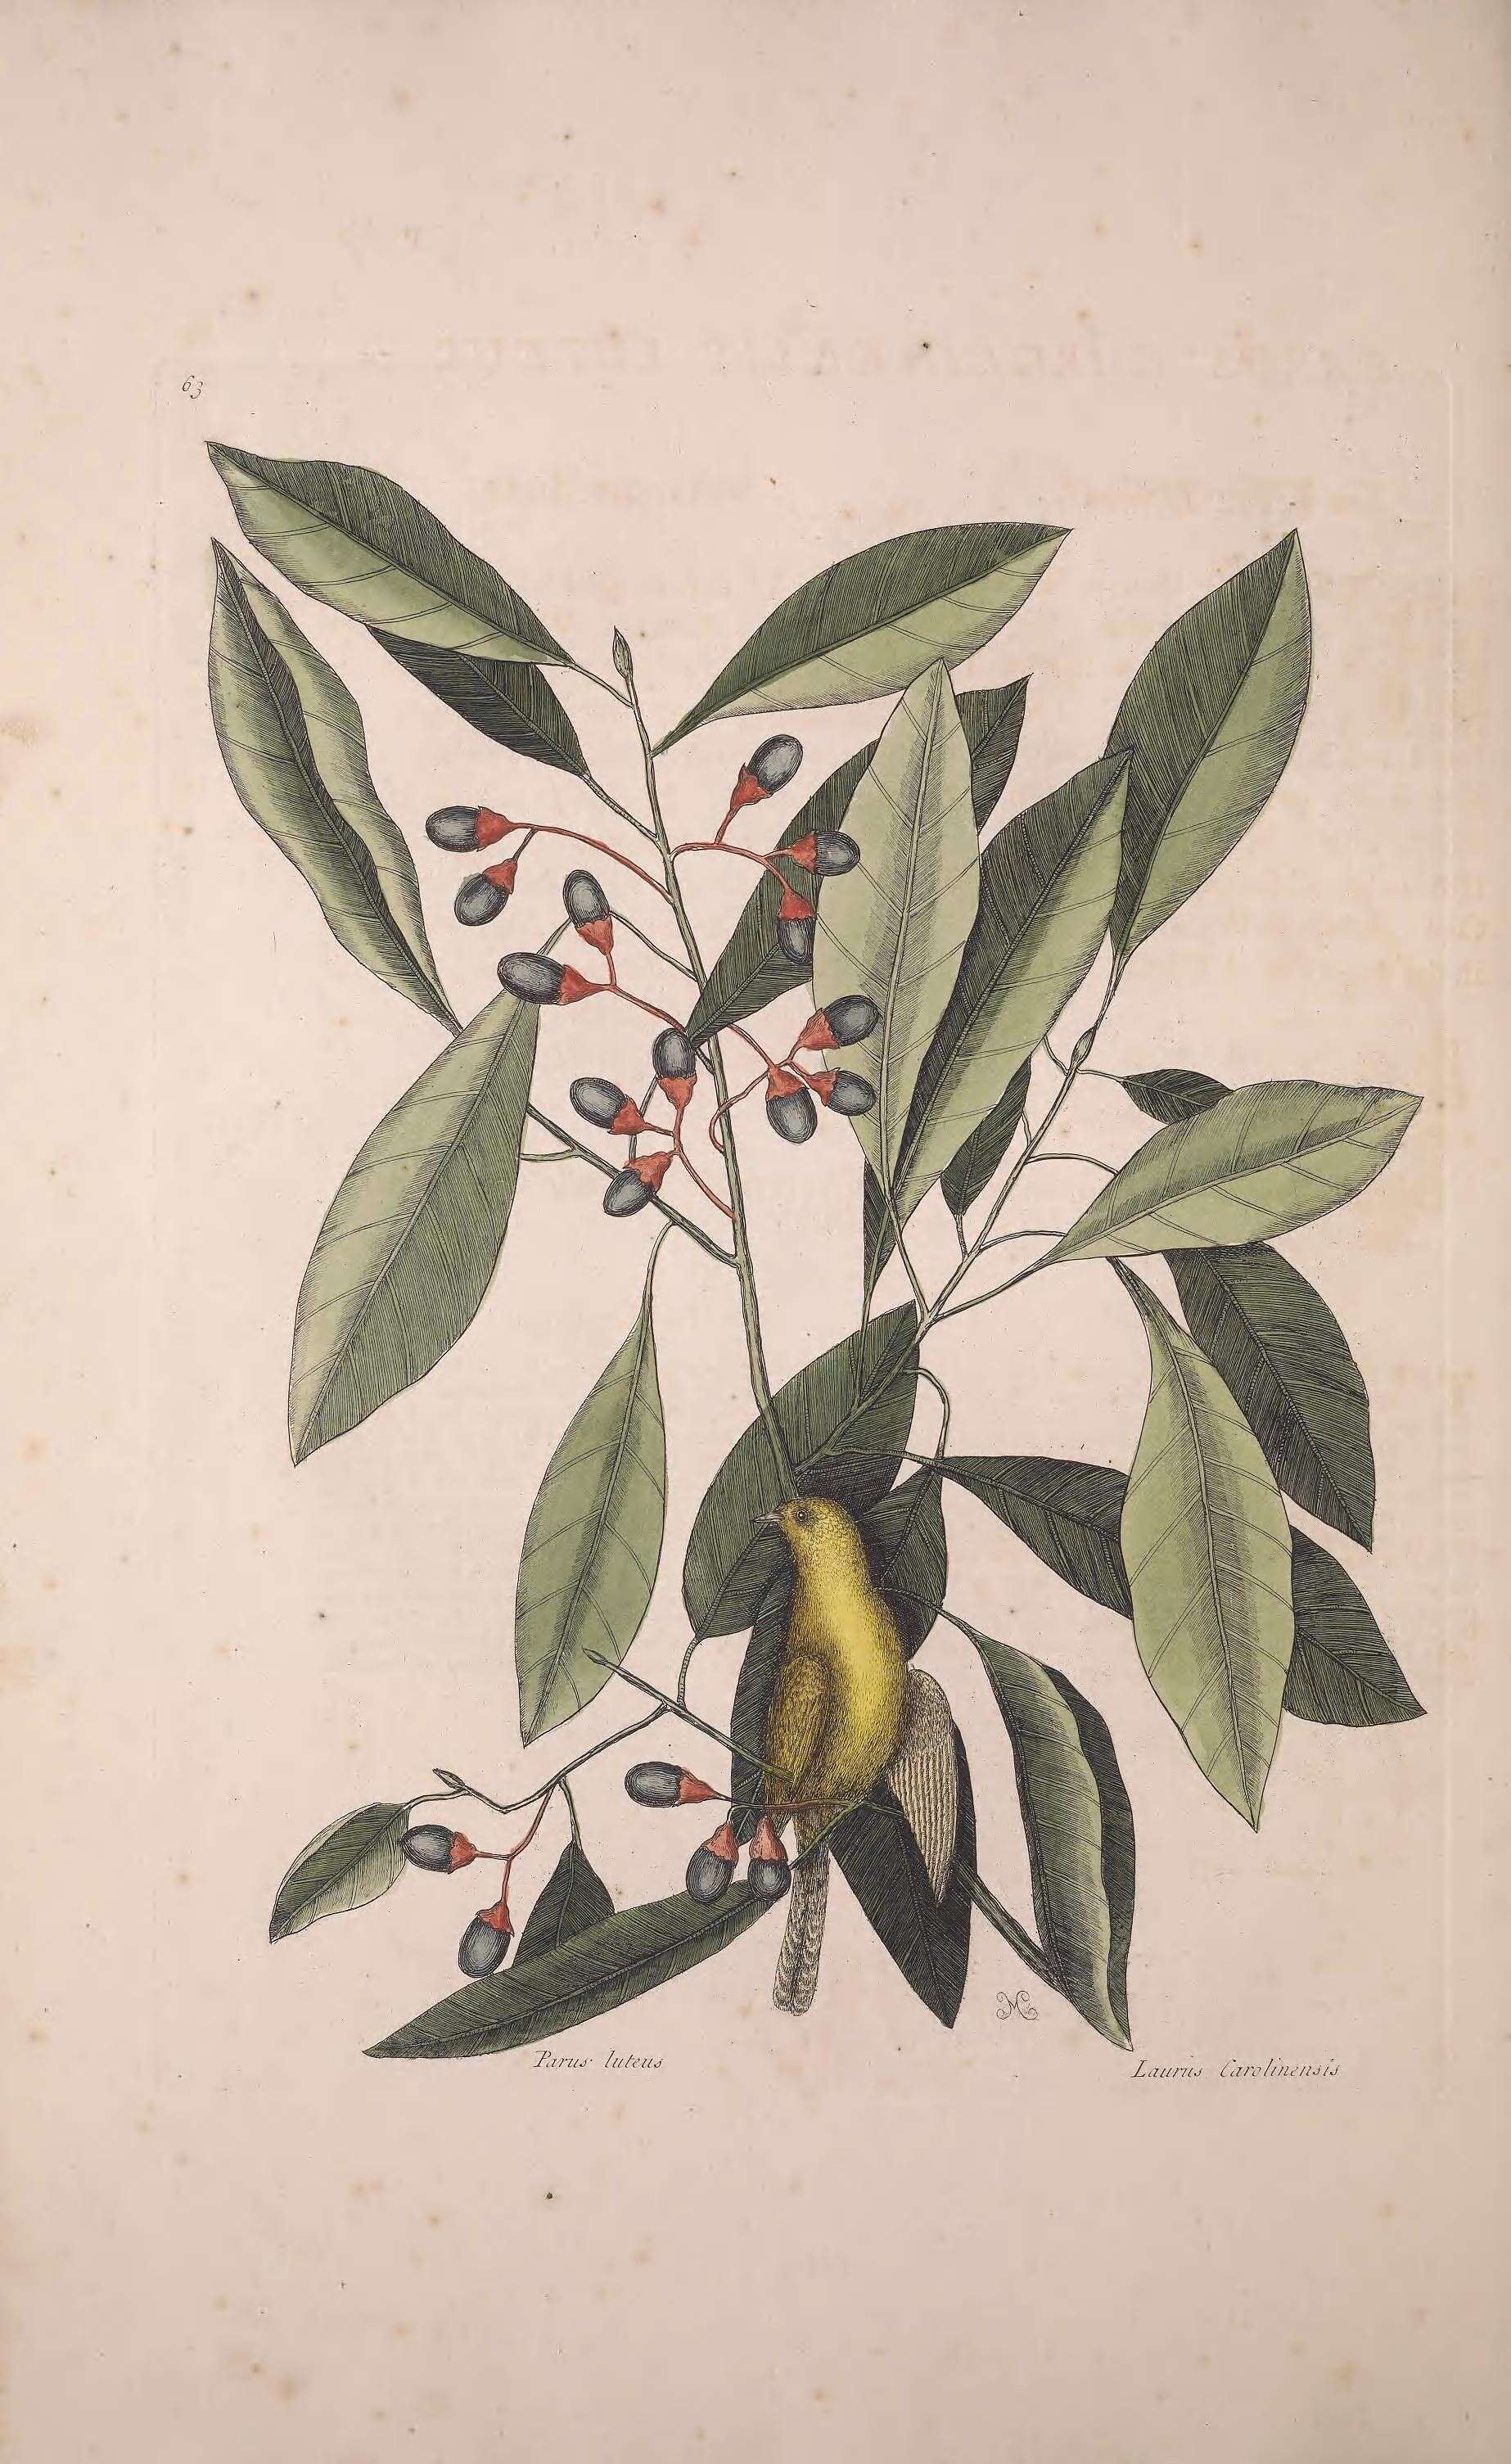 Sivun Persea borbonia (L.) Spreng. kuva